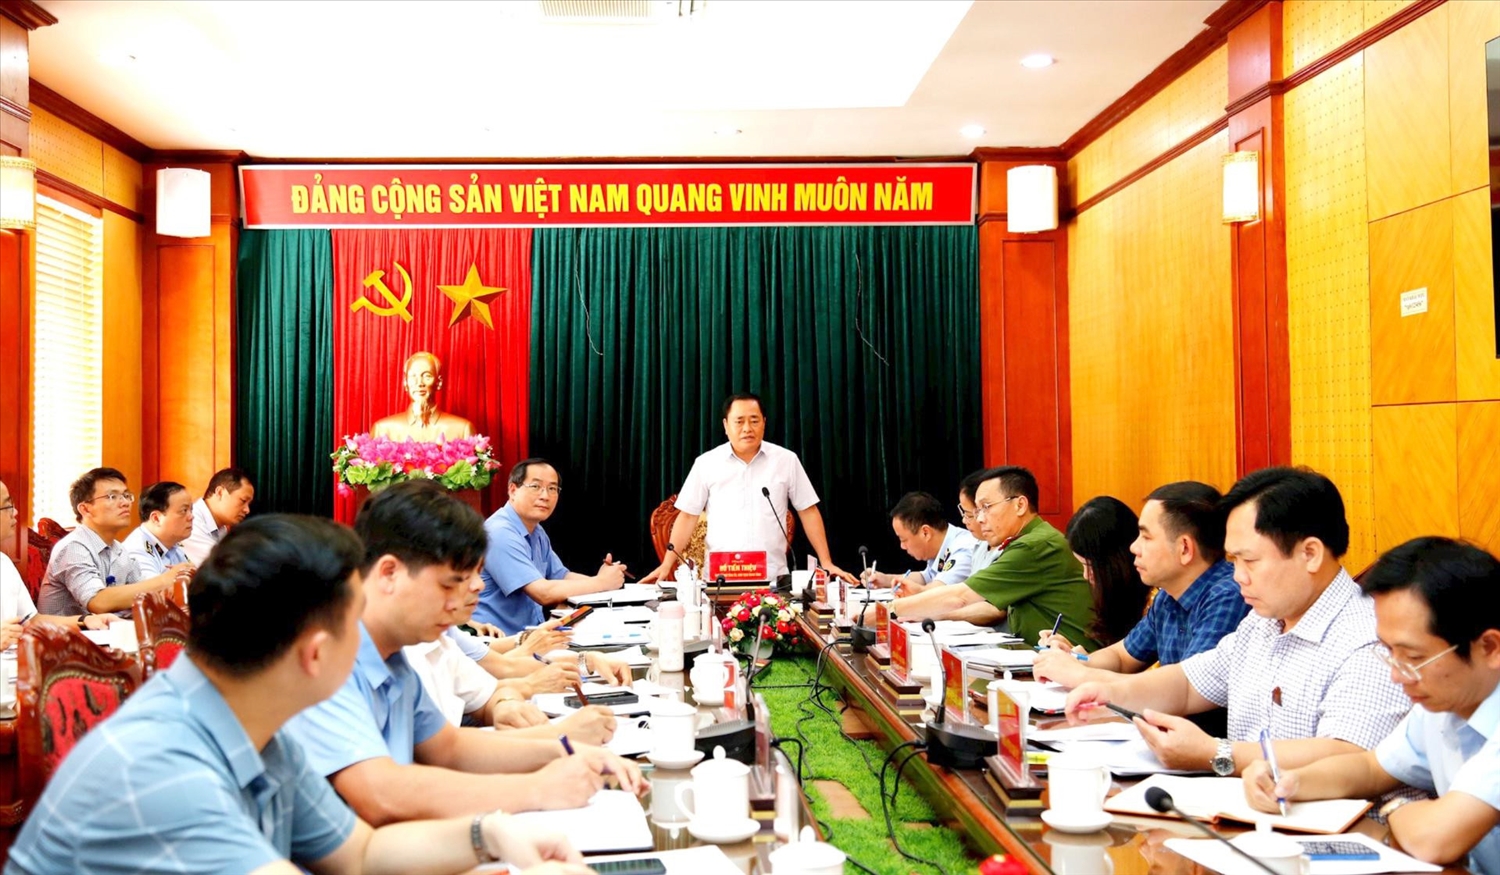 Ông Hồ Tiến Thiệu, Chủ tịch UBND tỉnh Lạng Sơn đã chủ trì cuộc họp để đôn đốc lực lượng chức năng triển khai việc ngăn chặn, phát hiện, xử lý kịp thời tình trạng vận chuyển trái phép hàng hóa qua biên giới.